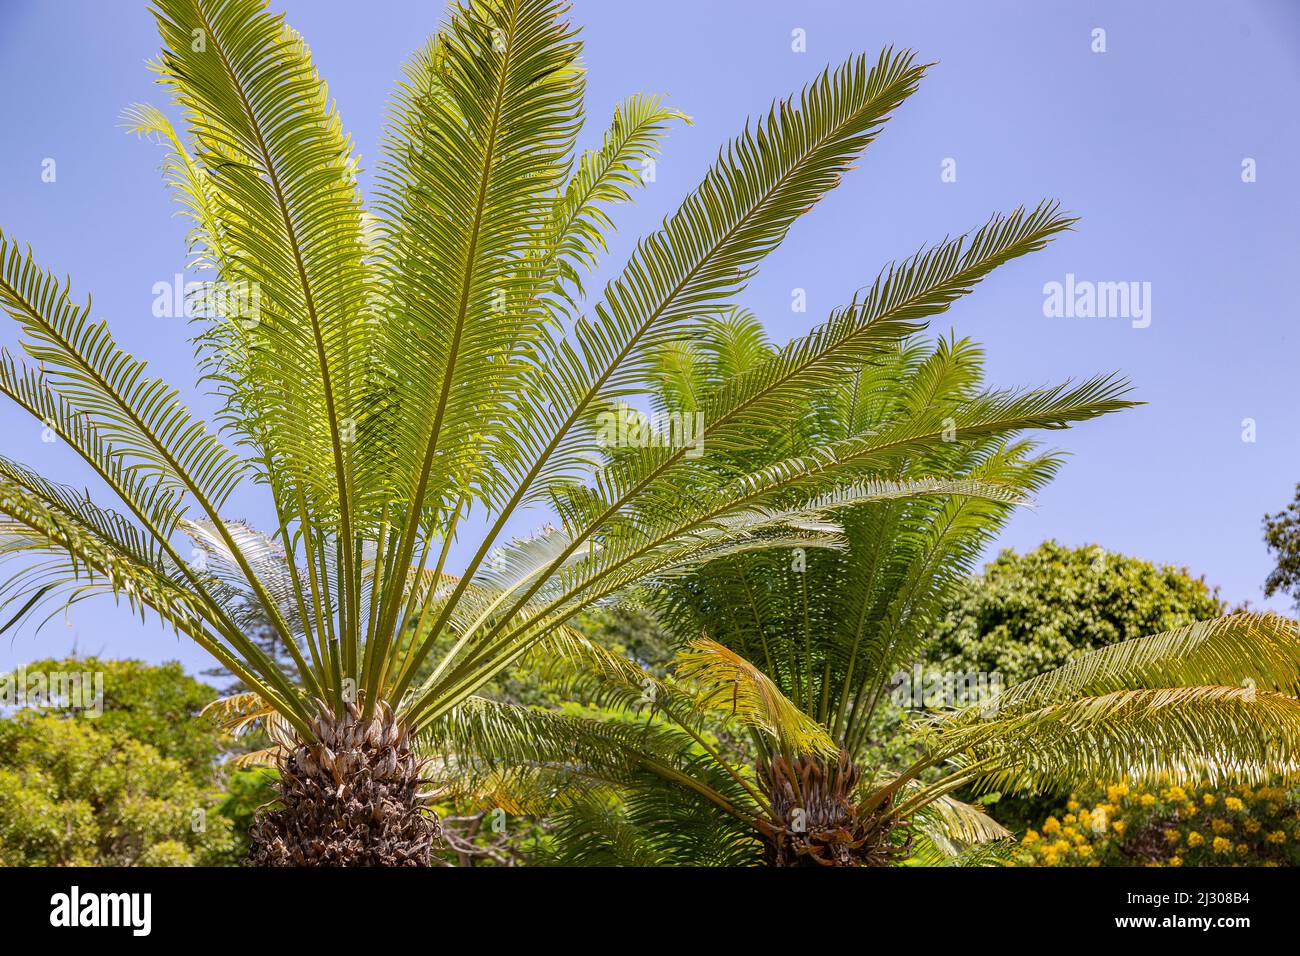 Queen sago, sago palm fern, Cycas circinalis Stock Photo